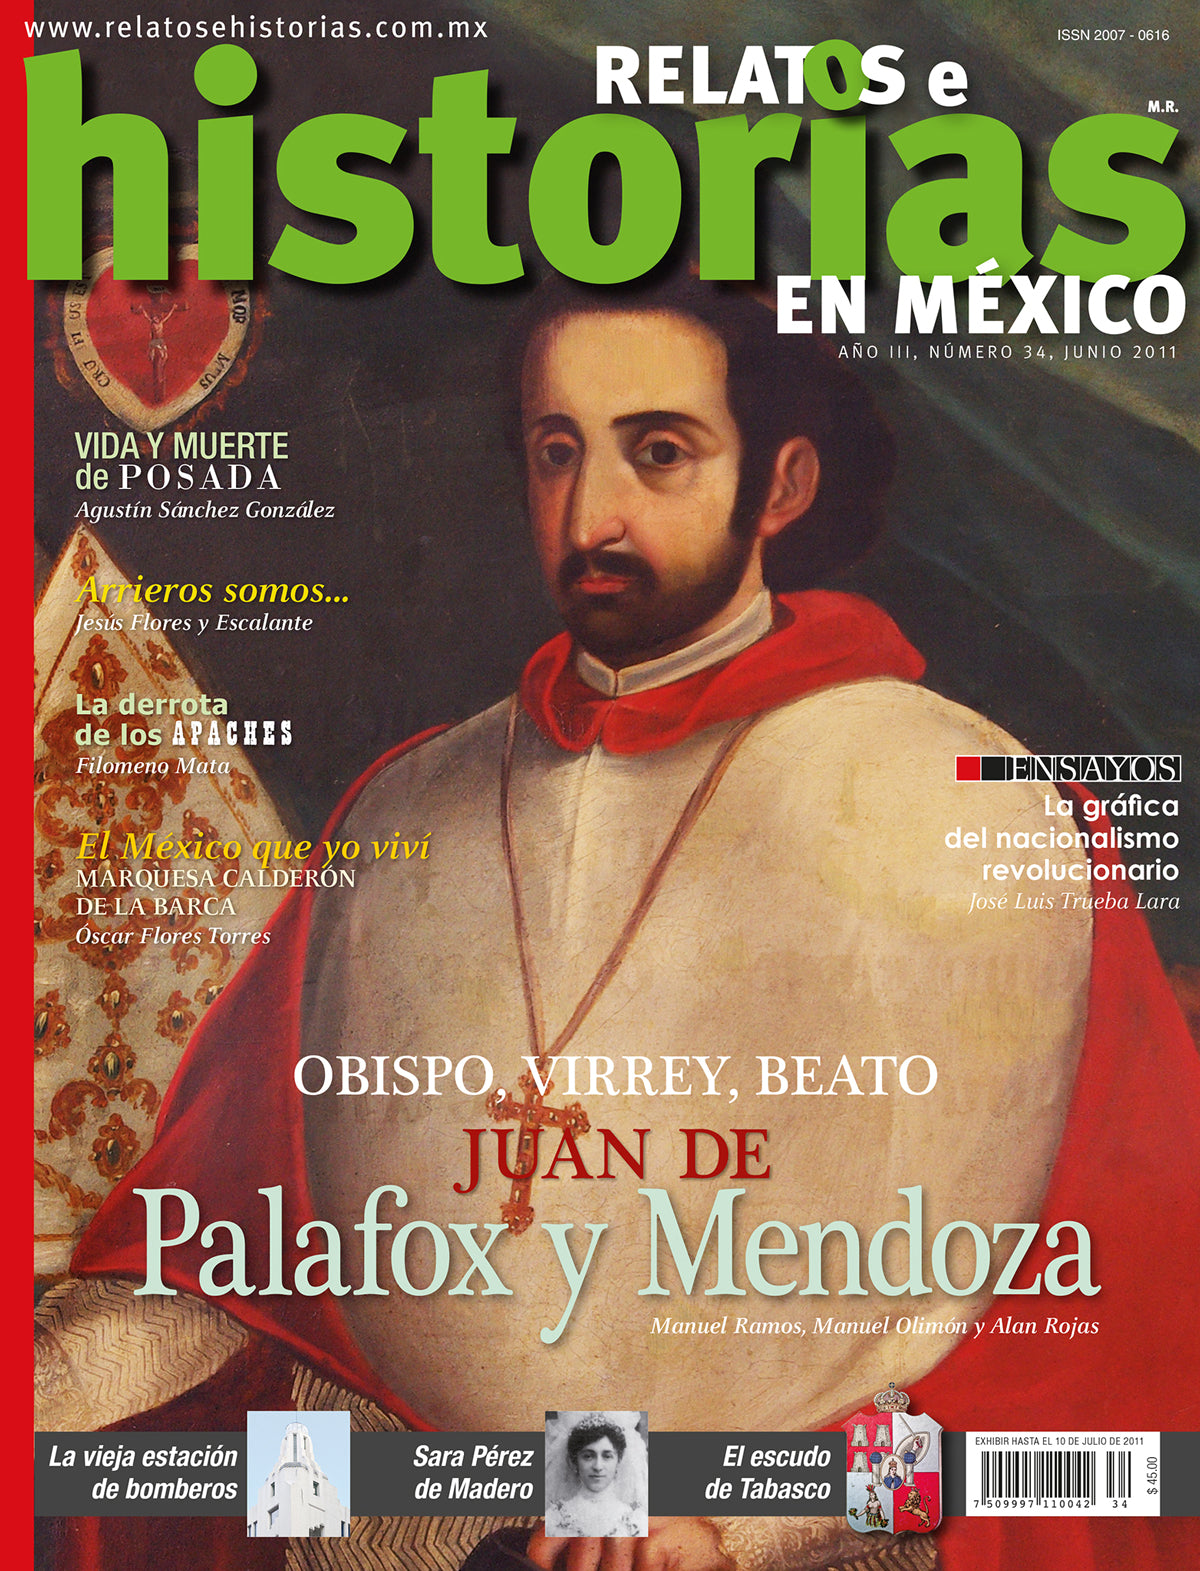 Juan de Palafox y Mendoza. Obispo, Virrey y Beato